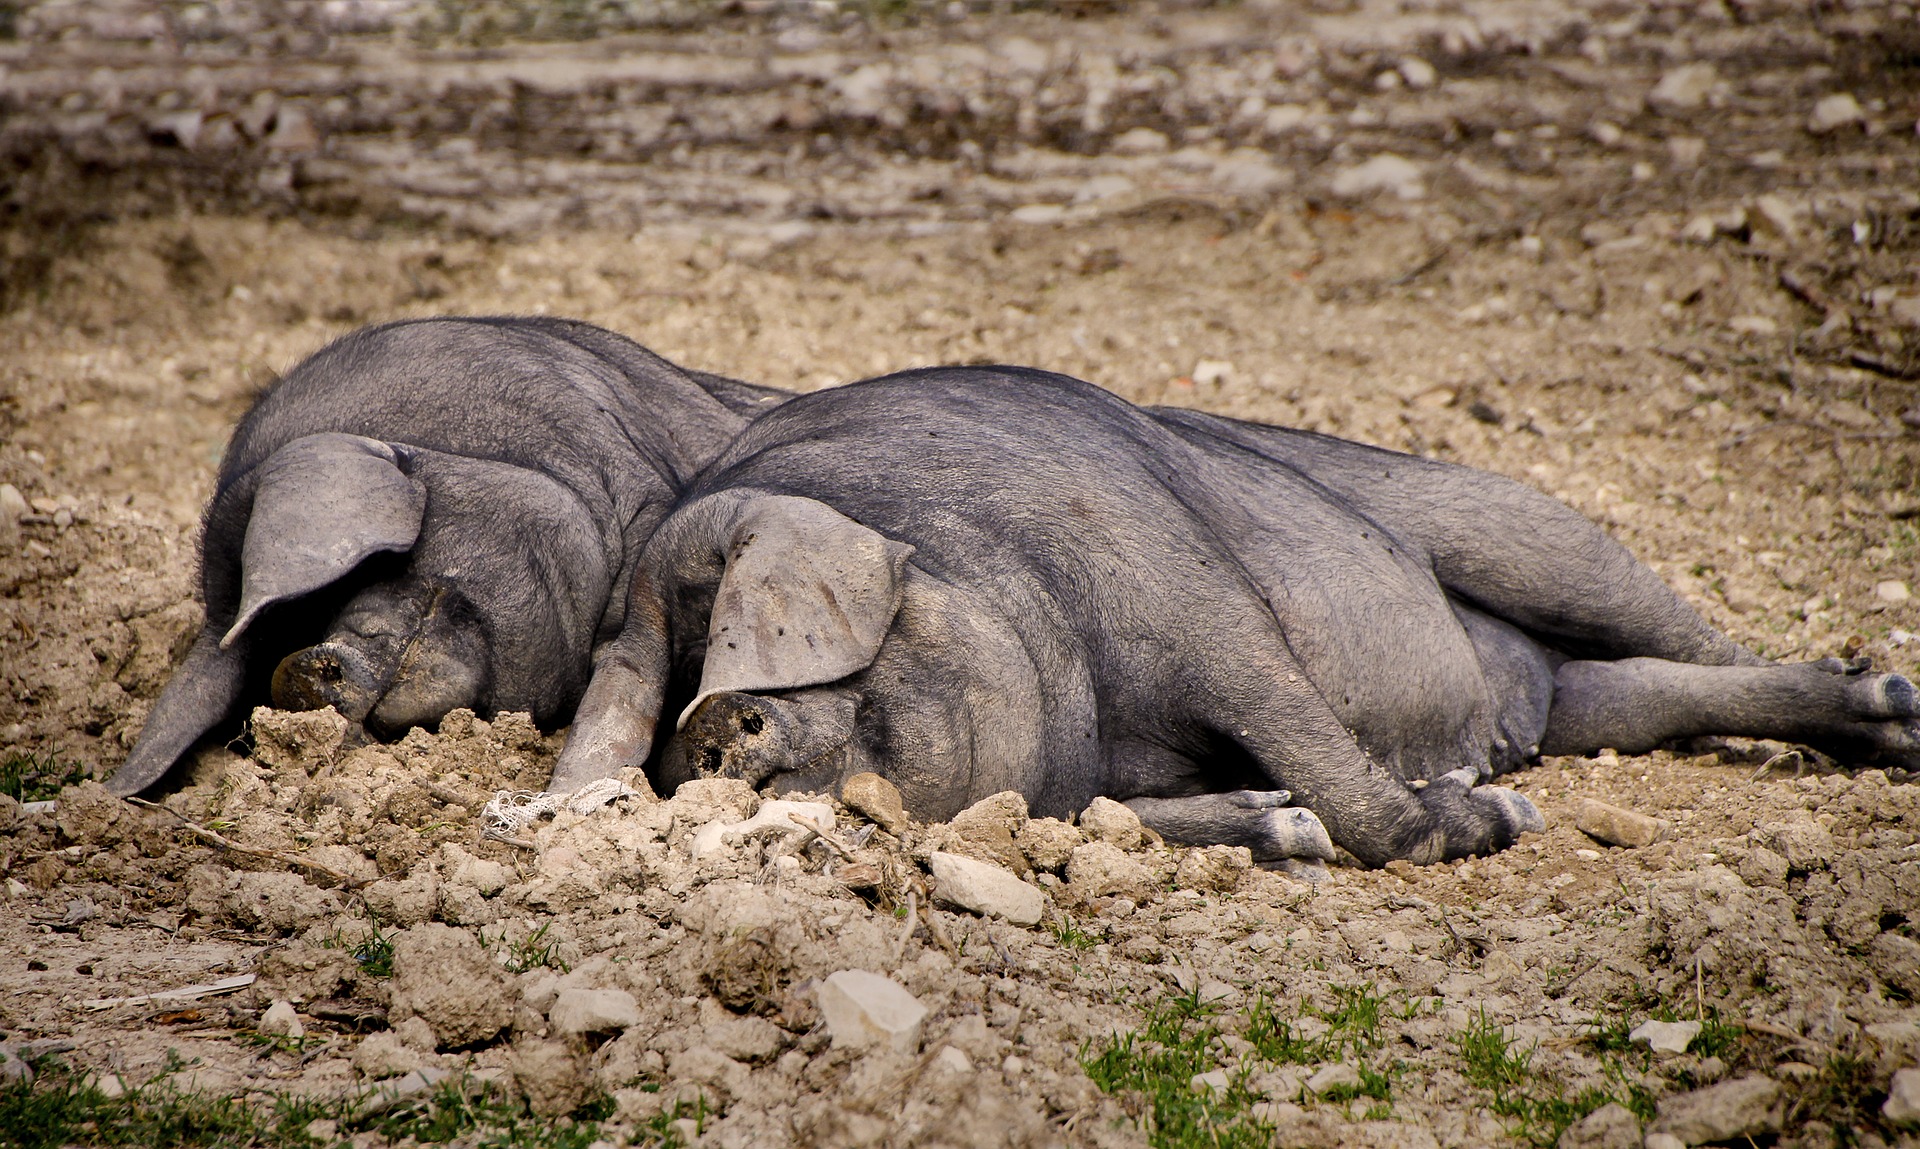 Ринок живця свиней: ситуація стабілізувалася